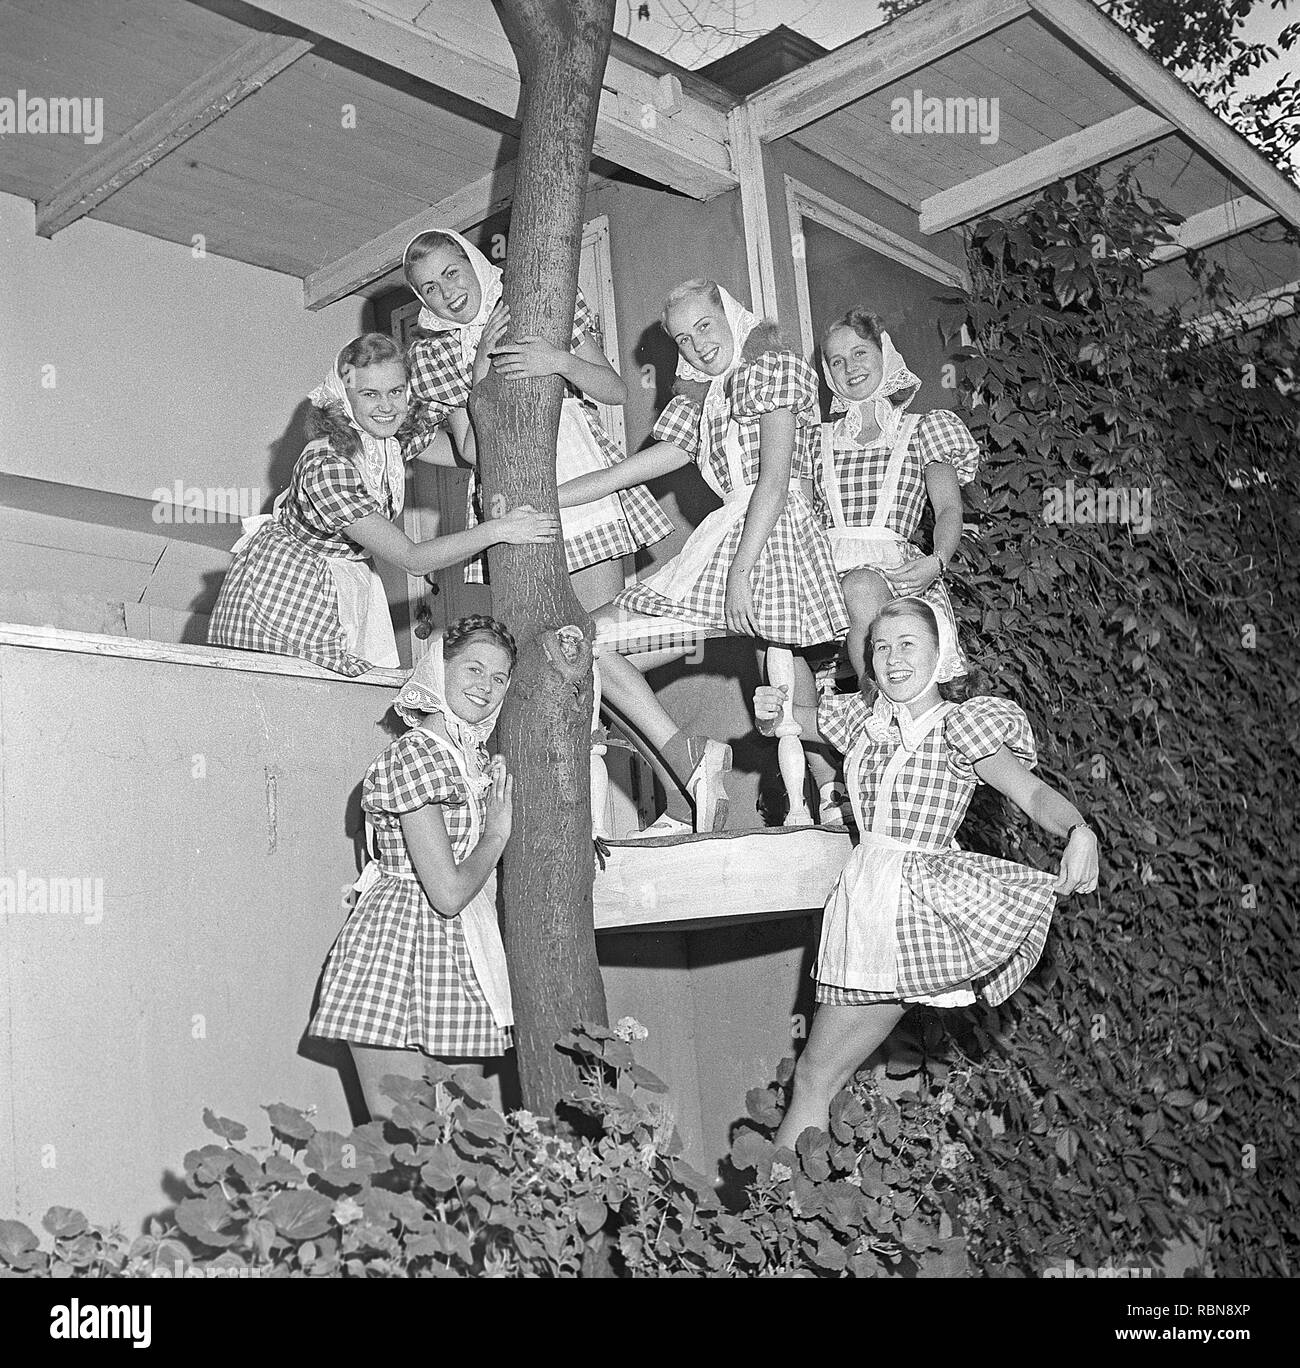 Le donne nel 1940s. Un gruppo di ballerini donne pongono insieme indossano i loro costumi di scena che sono abiti a scacchi. Svezia Foto Kristoffersson Ref V78-3. La Svezia 1947 Foto Stock